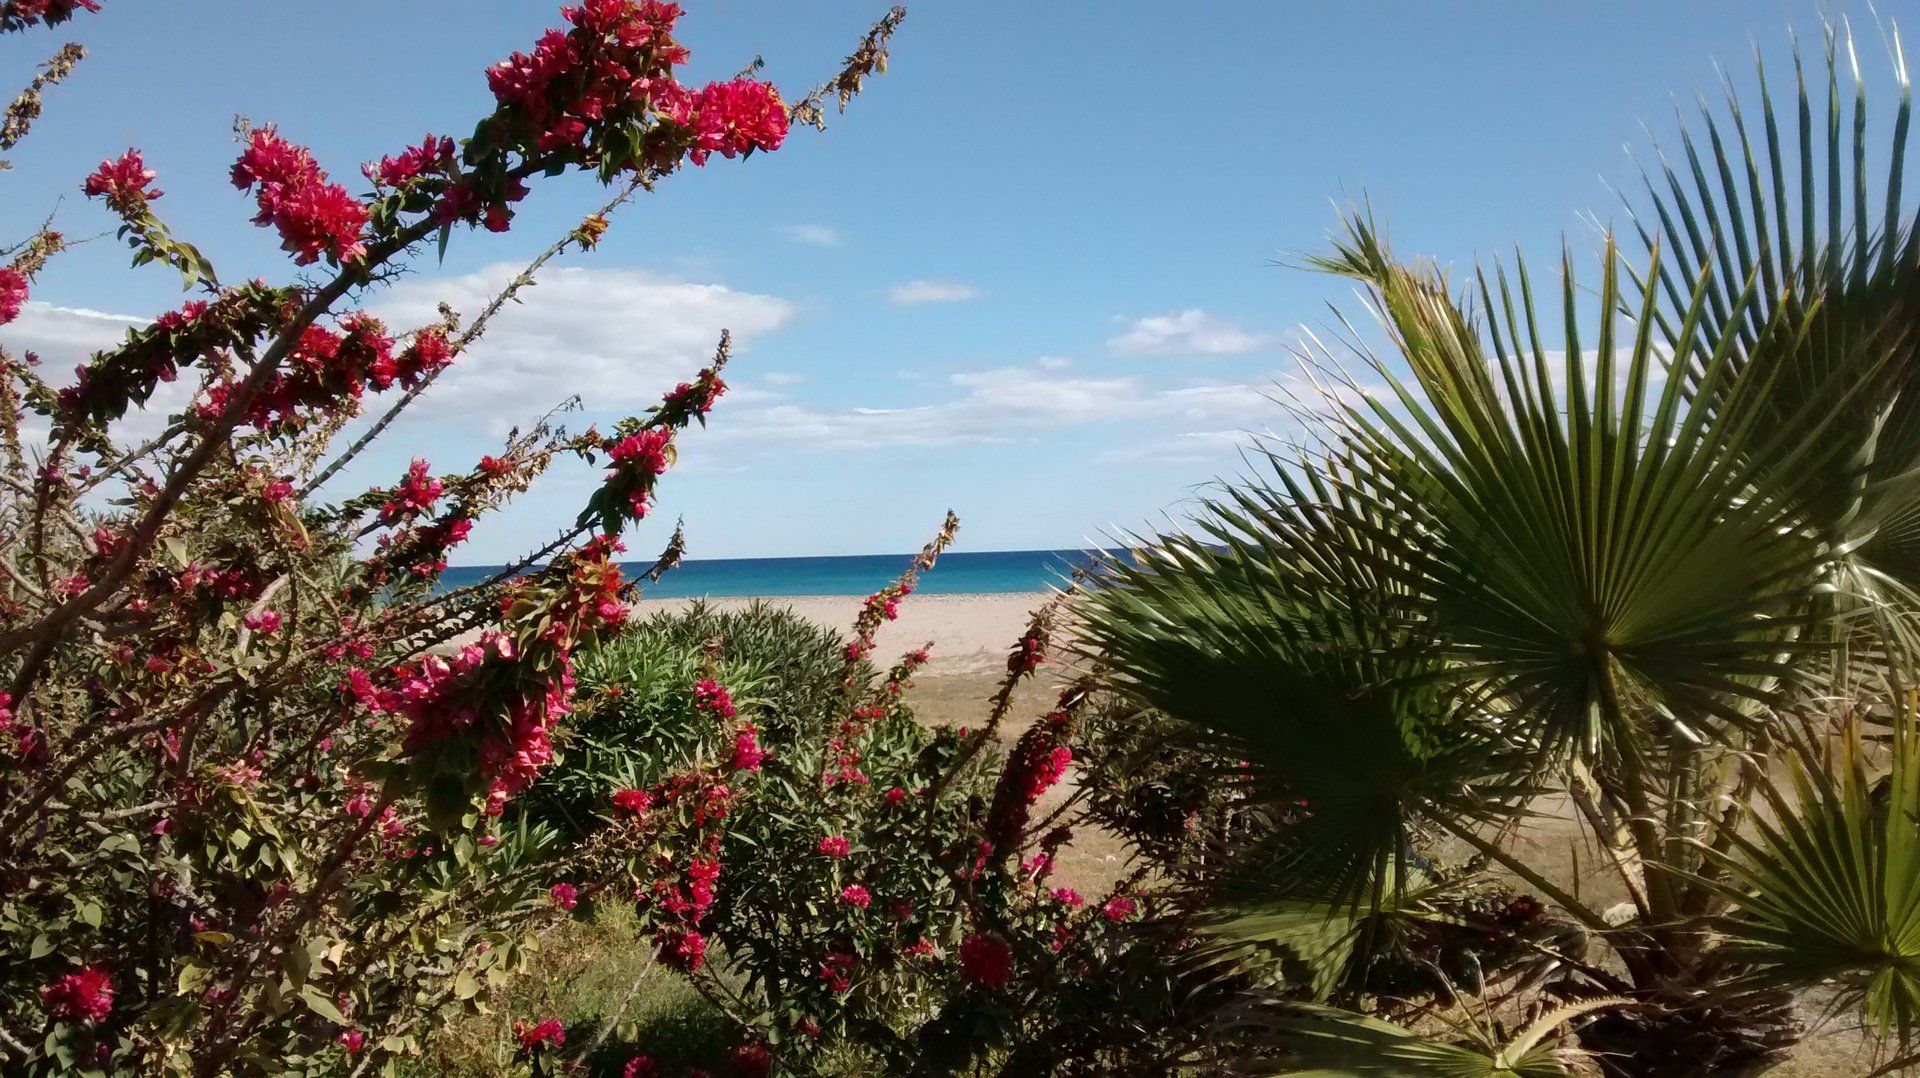 mirando a través de hermosos pétalos rojos y hojas de palma hacia la playa y el mar azul más allá